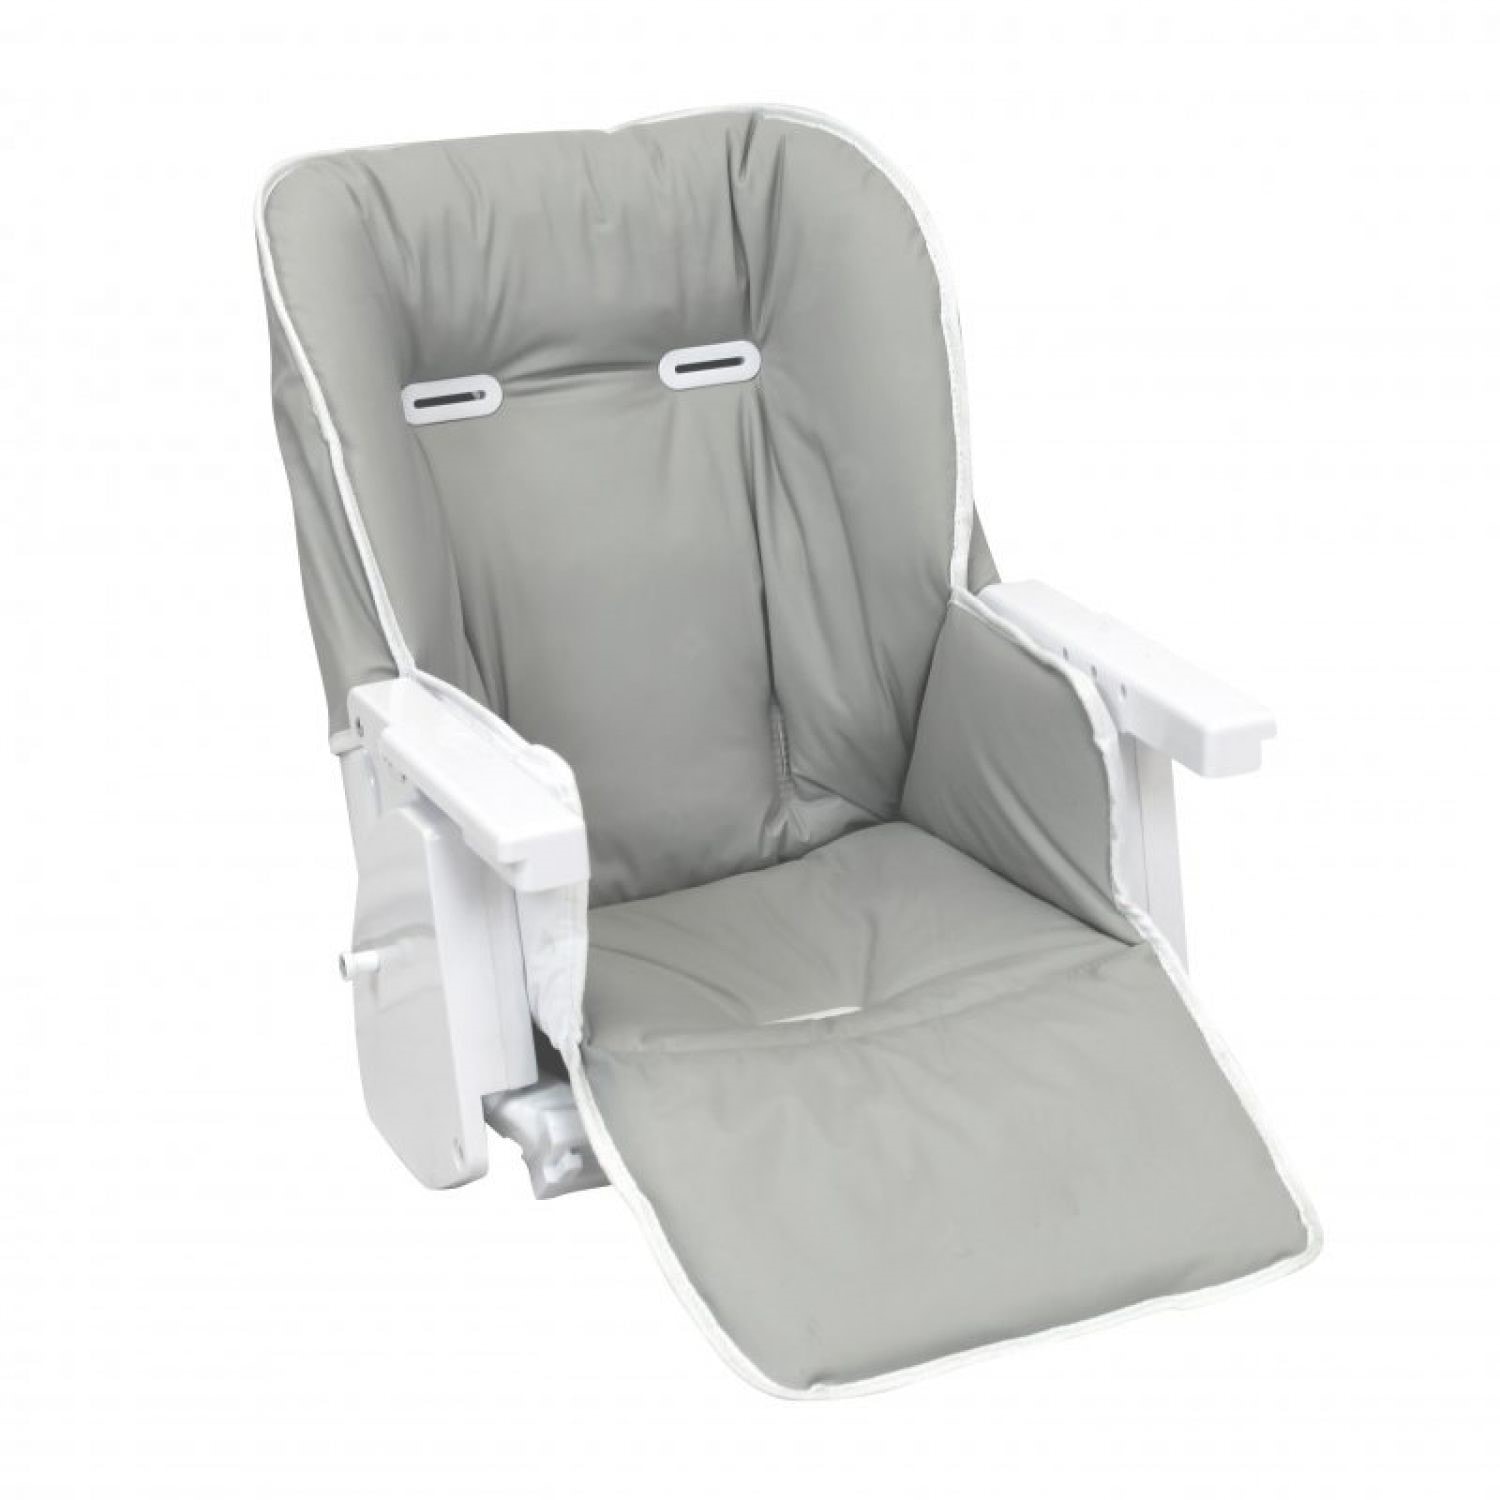 Housse d'assise pour chaise haute bébé enfant gamme ptit - ptite